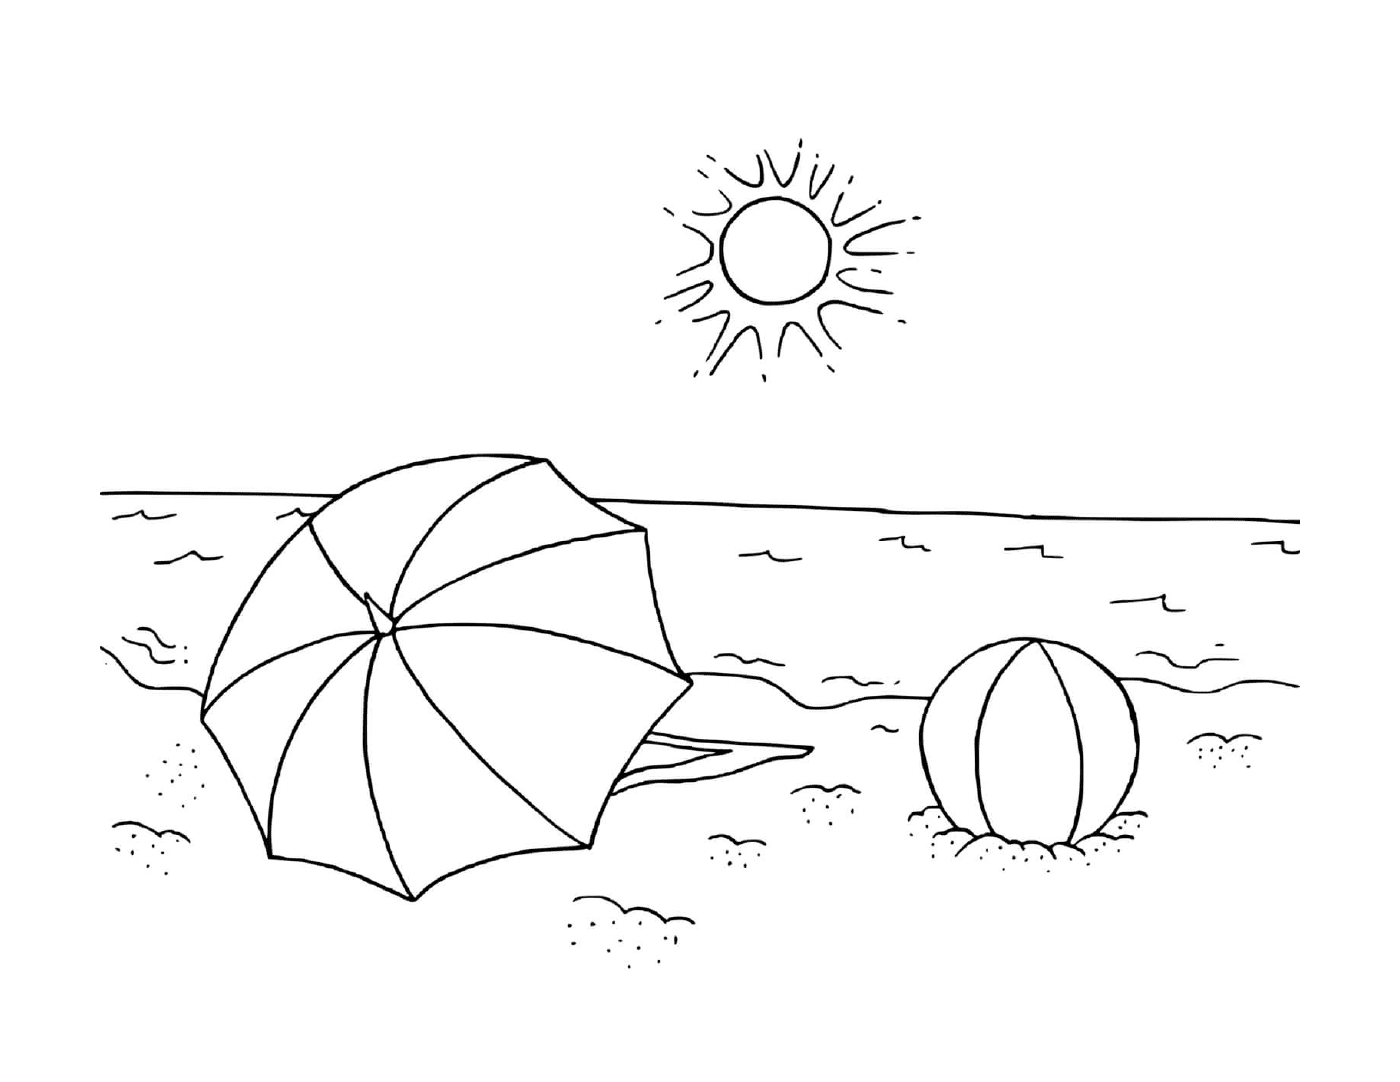  Sunset beach with balloon 